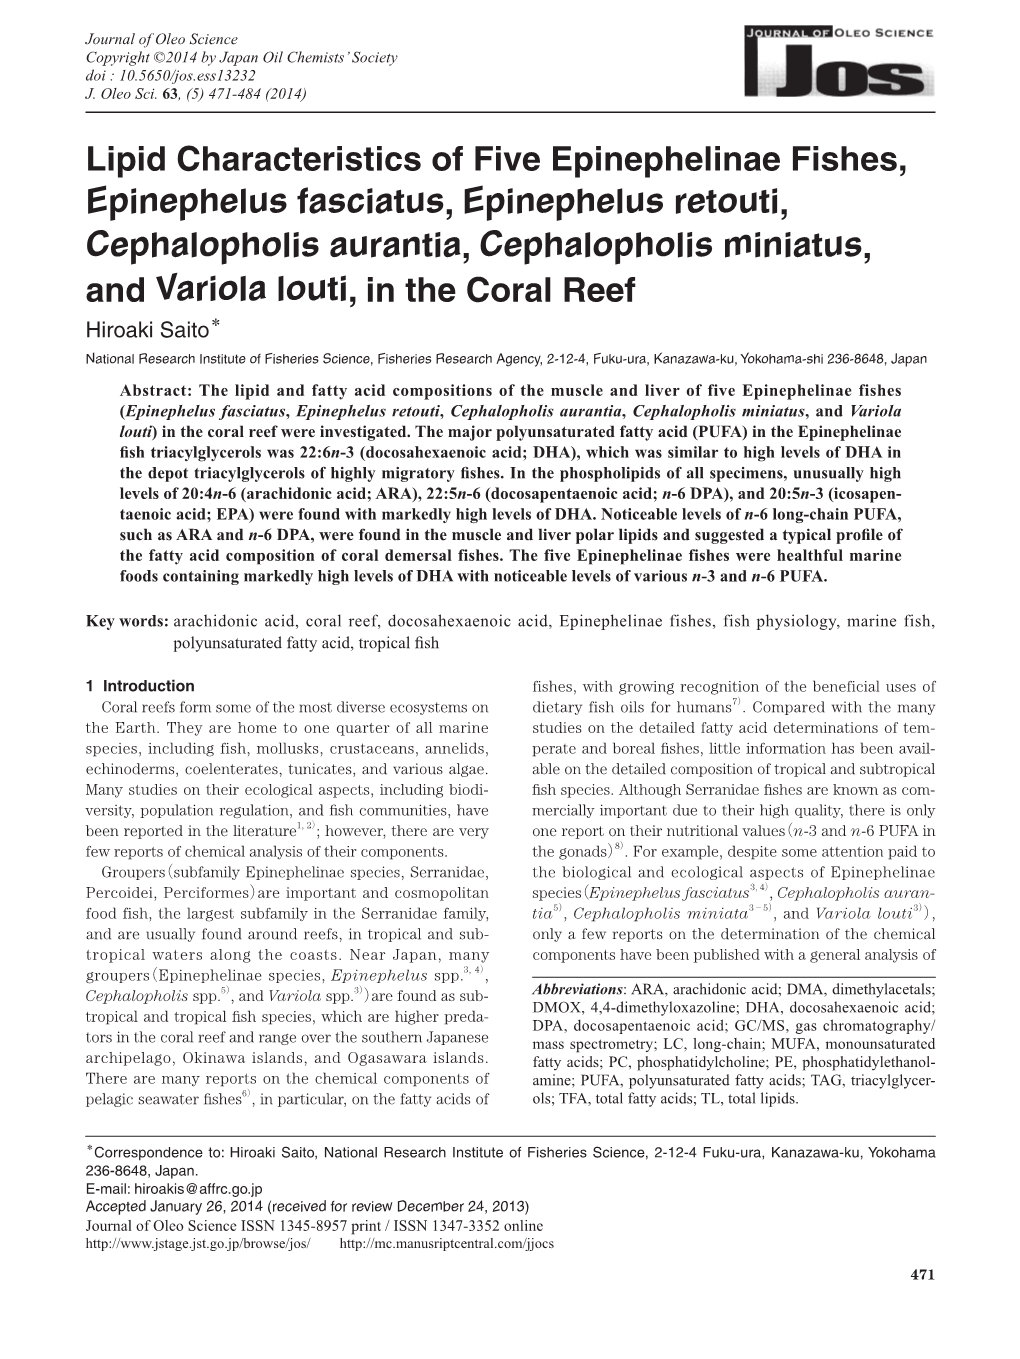 Lipid Characteristics of Five Epinephelinae Fishes, Epinephelus